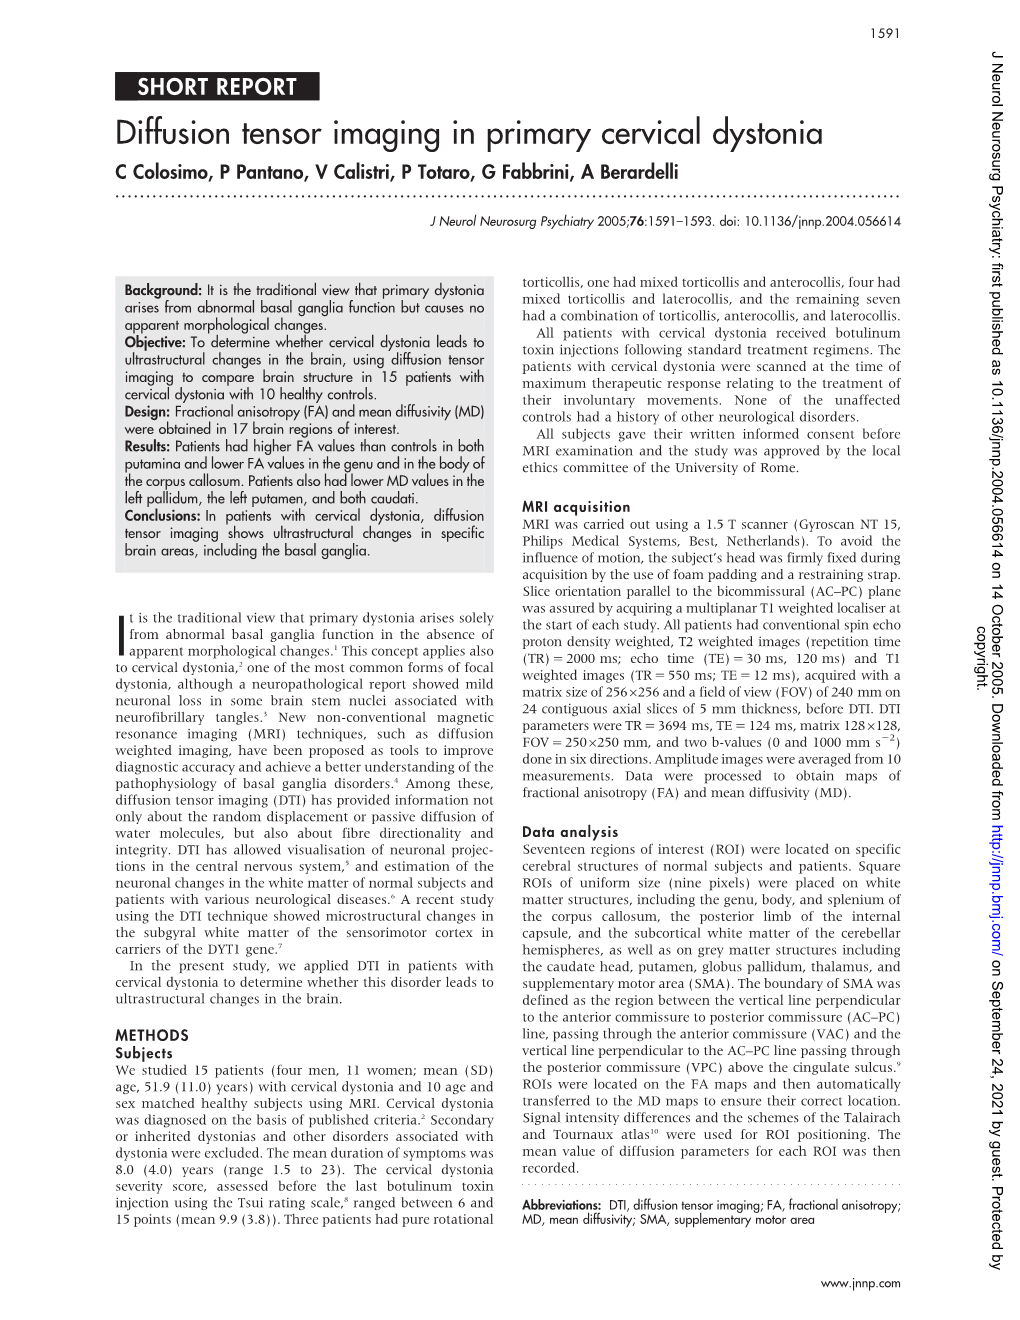 Diffusion Tensor Imaging in Primary Cervical Dystonia C Colosimo, P Pantano, V Calistri, P Totaro, G Fabbrini, a Berardelli